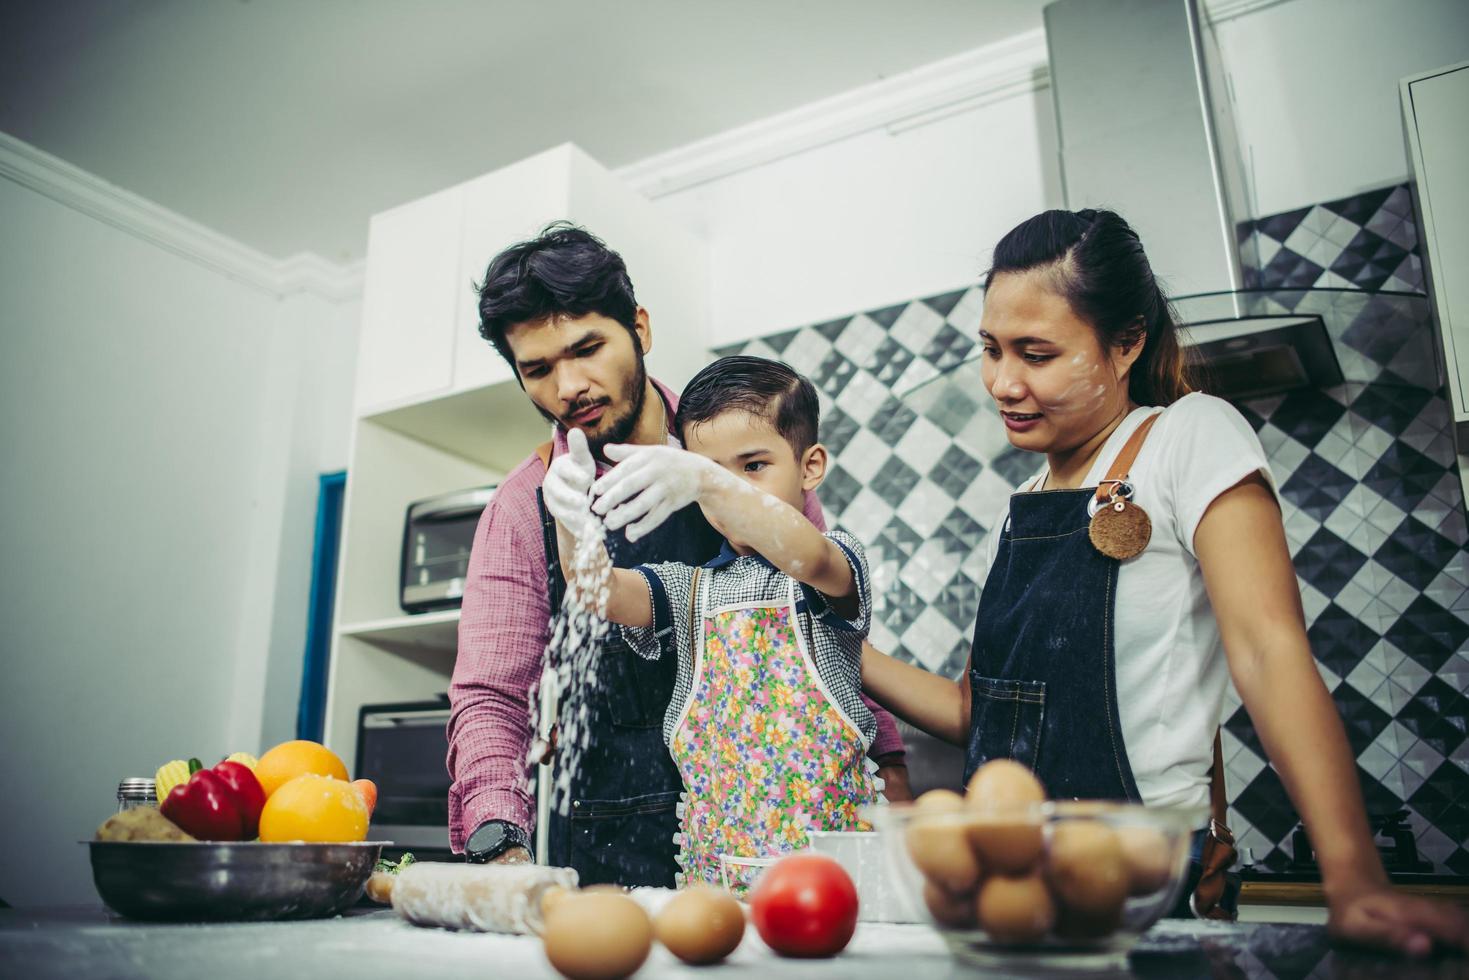 famille heureuse, profitant de leur temps à cuisiner ensemble dans la cuisine photo